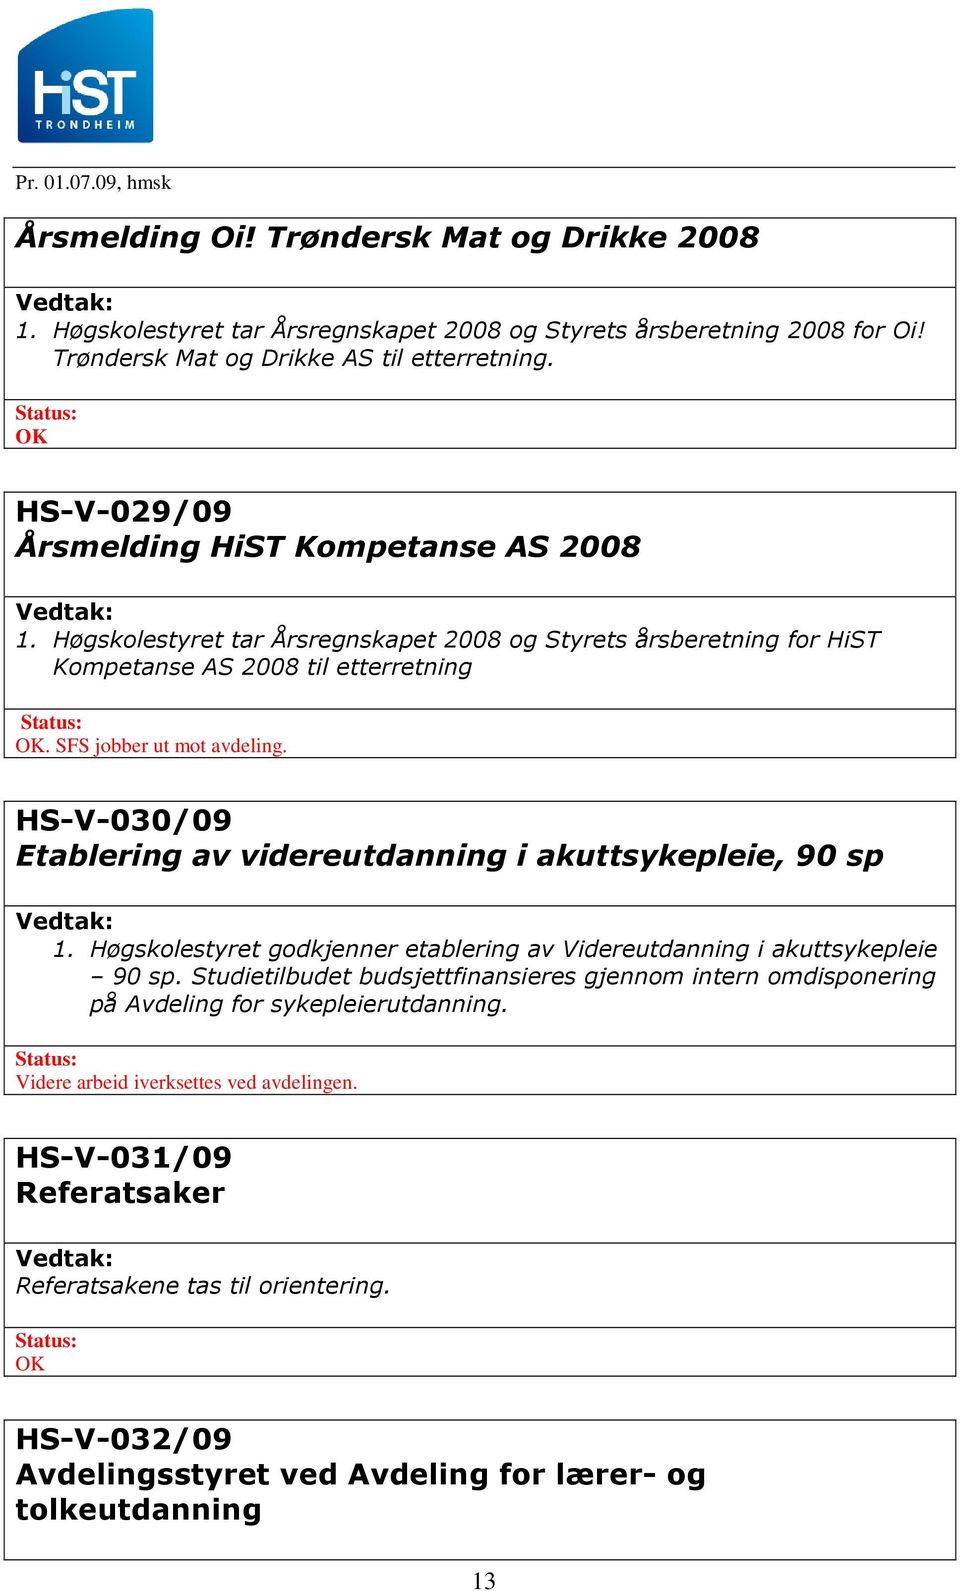 HS-V-030/09 Etablering av videreutdanning i akuttsykepleie, 90 sp 1. Høgskolestyret godkjenner etablering av Videreutdanning i akuttsykepleie 90 sp.